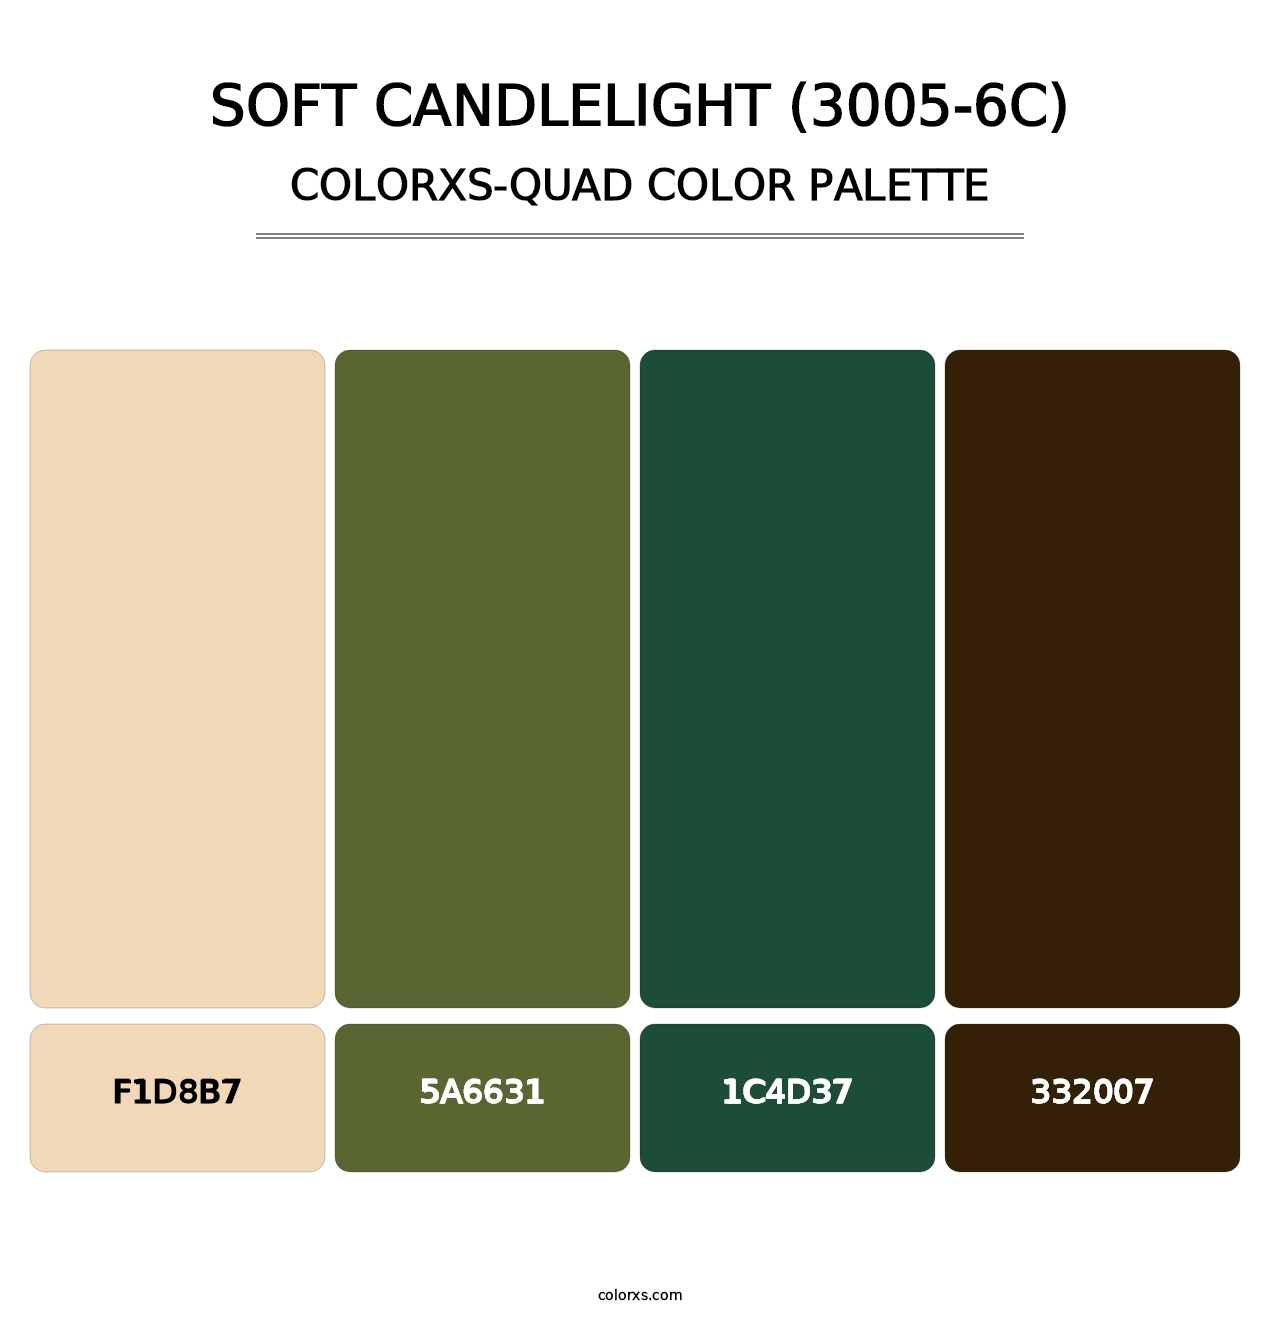 Soft Candlelight (3005-6C) - Colorxs Quad Palette